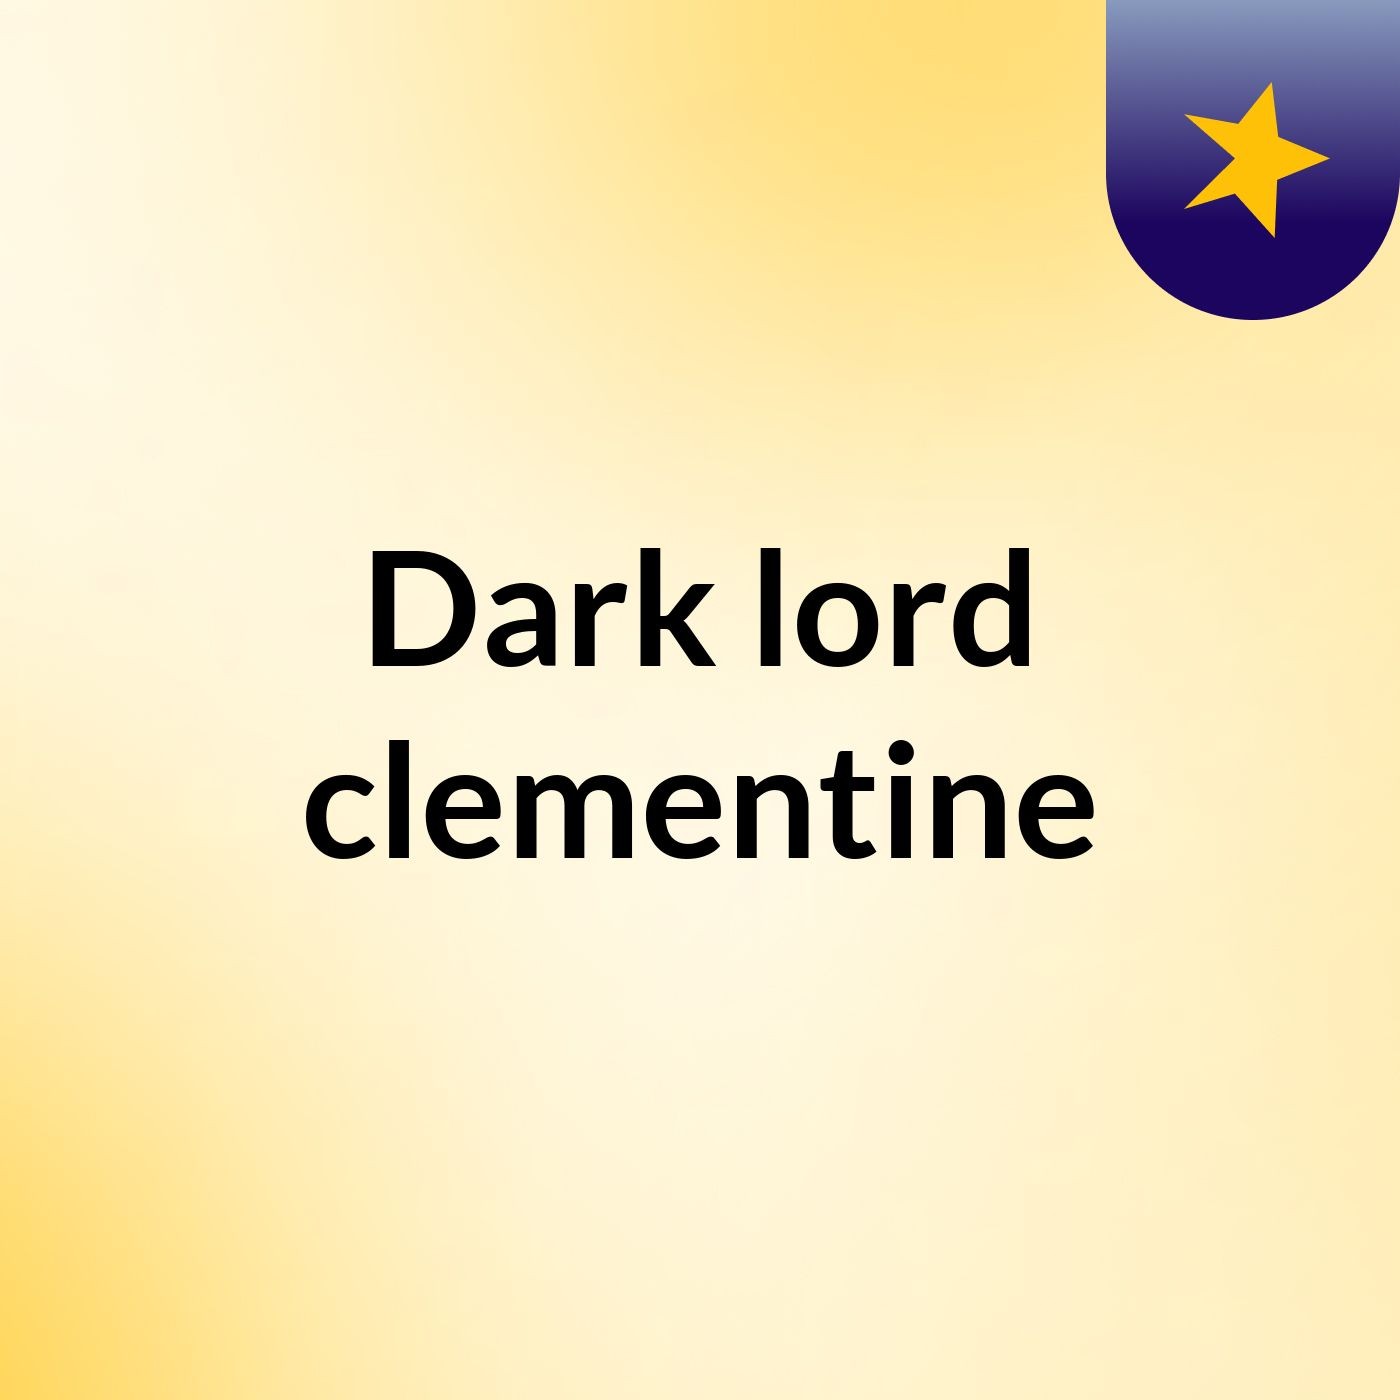 Dark lord clementine